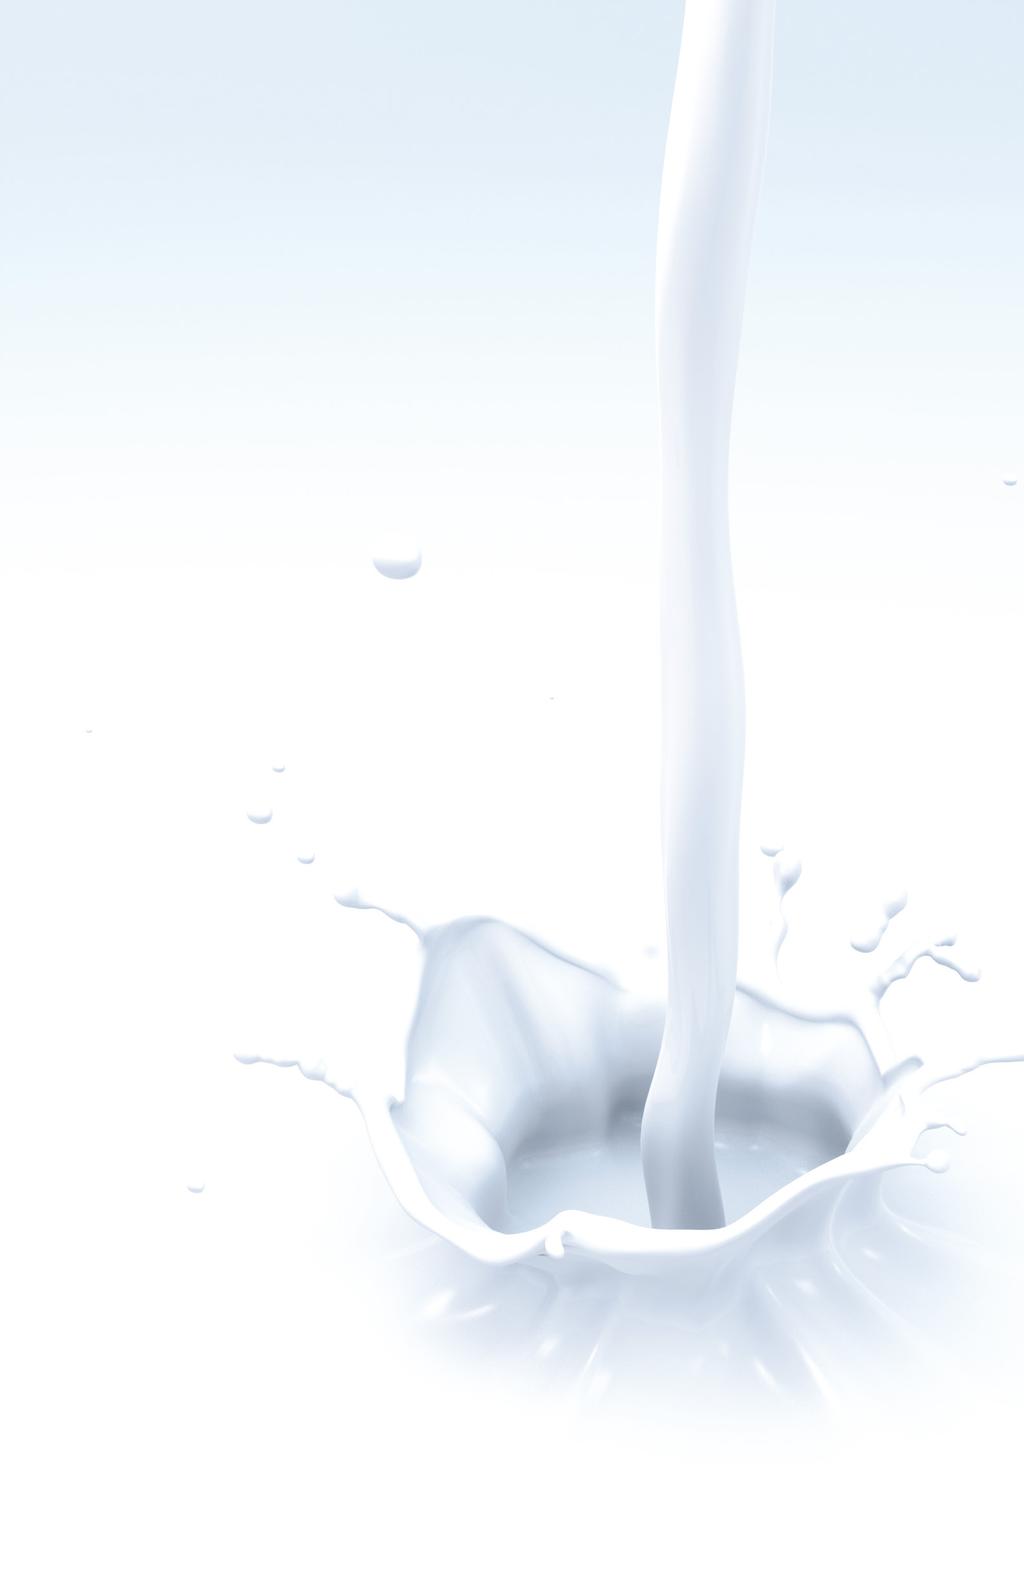 Über die Firma BouMatic Robotics B.V. ist ein dynamisches niederländisches Unternehmen, das sich auf die Robotisierung in der Milchviehhaltung spezialisiert hat.